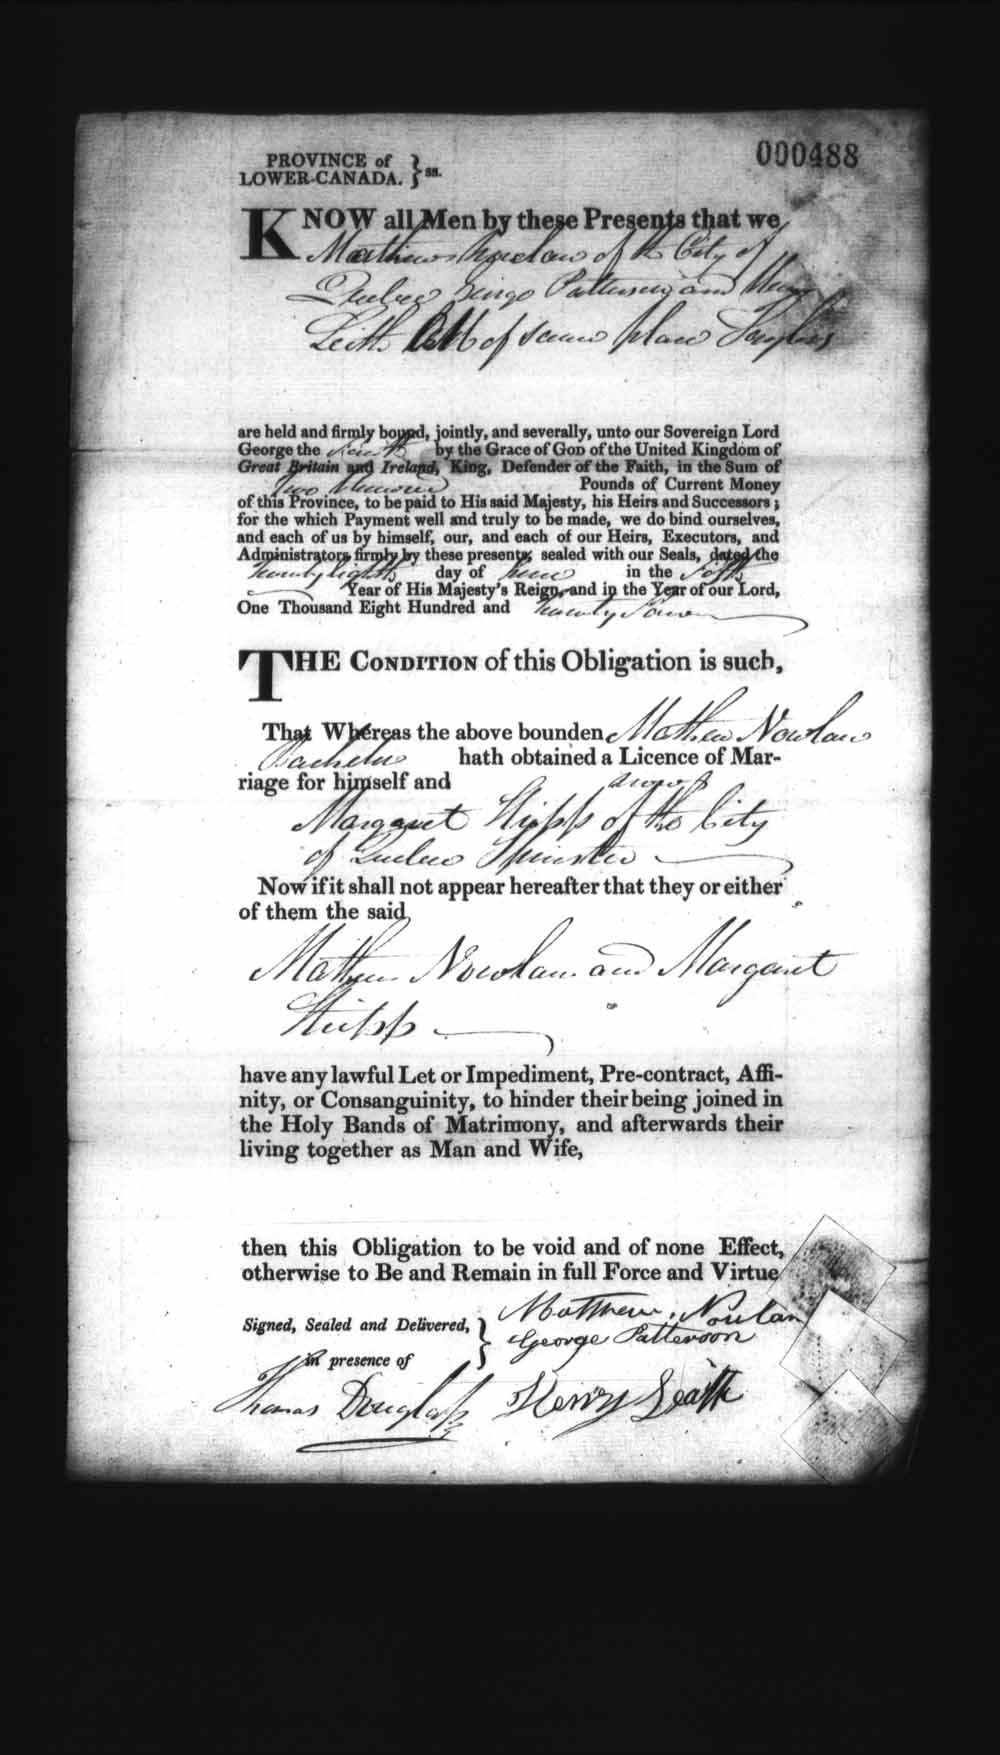 Page numérisé de Cautionnements de mariages pour le Haut-Canada et le Bas-Canada (1779-1865) pour l'image numéro: e008236400